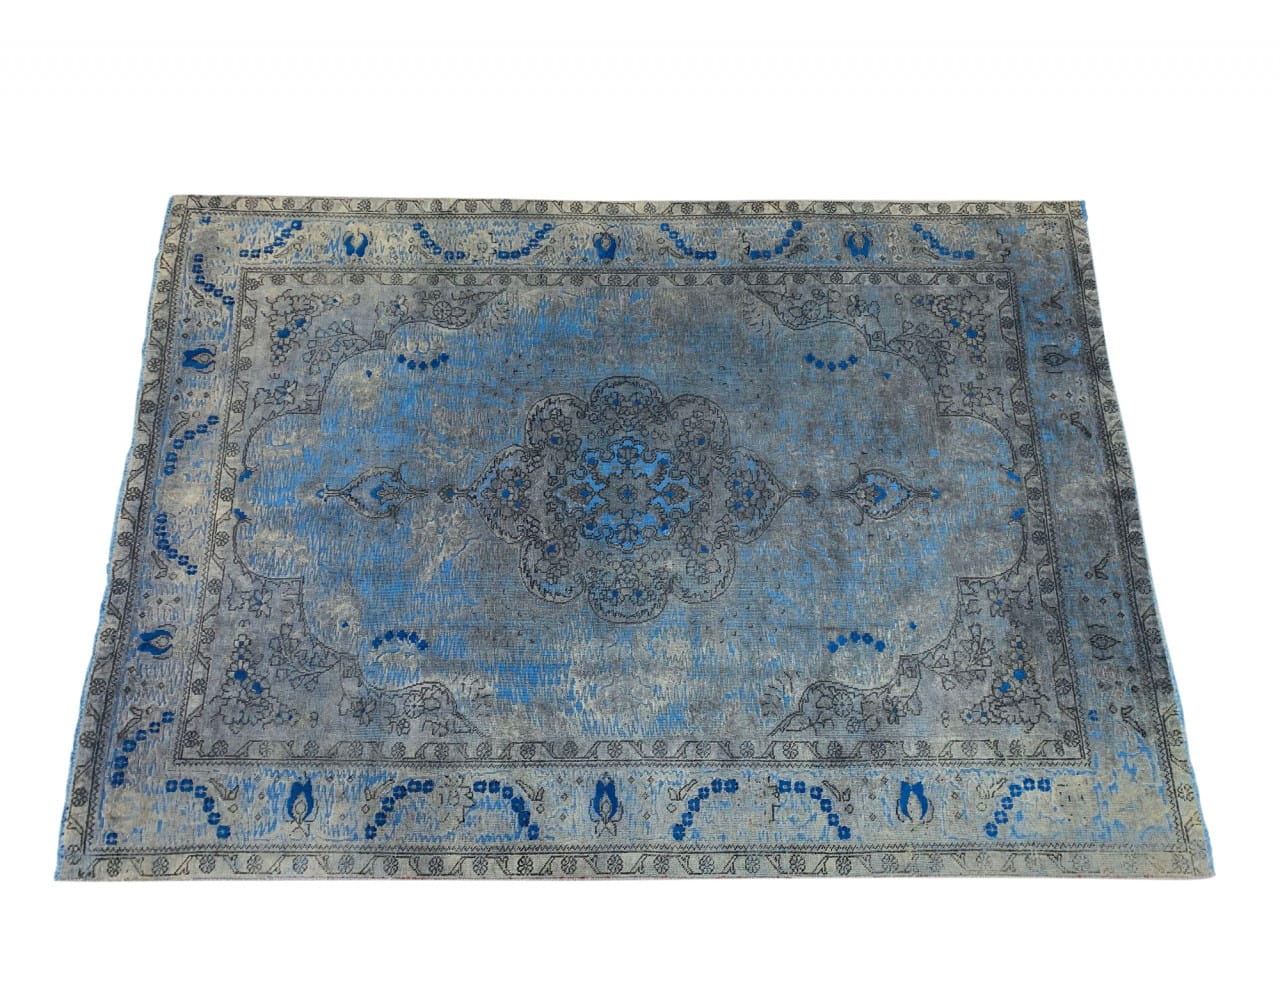 SARTORI IR KARMA I INTERO Vintage Teppich in wunderschönen blauen Akzenten Farbtönen 288 x 201 cm